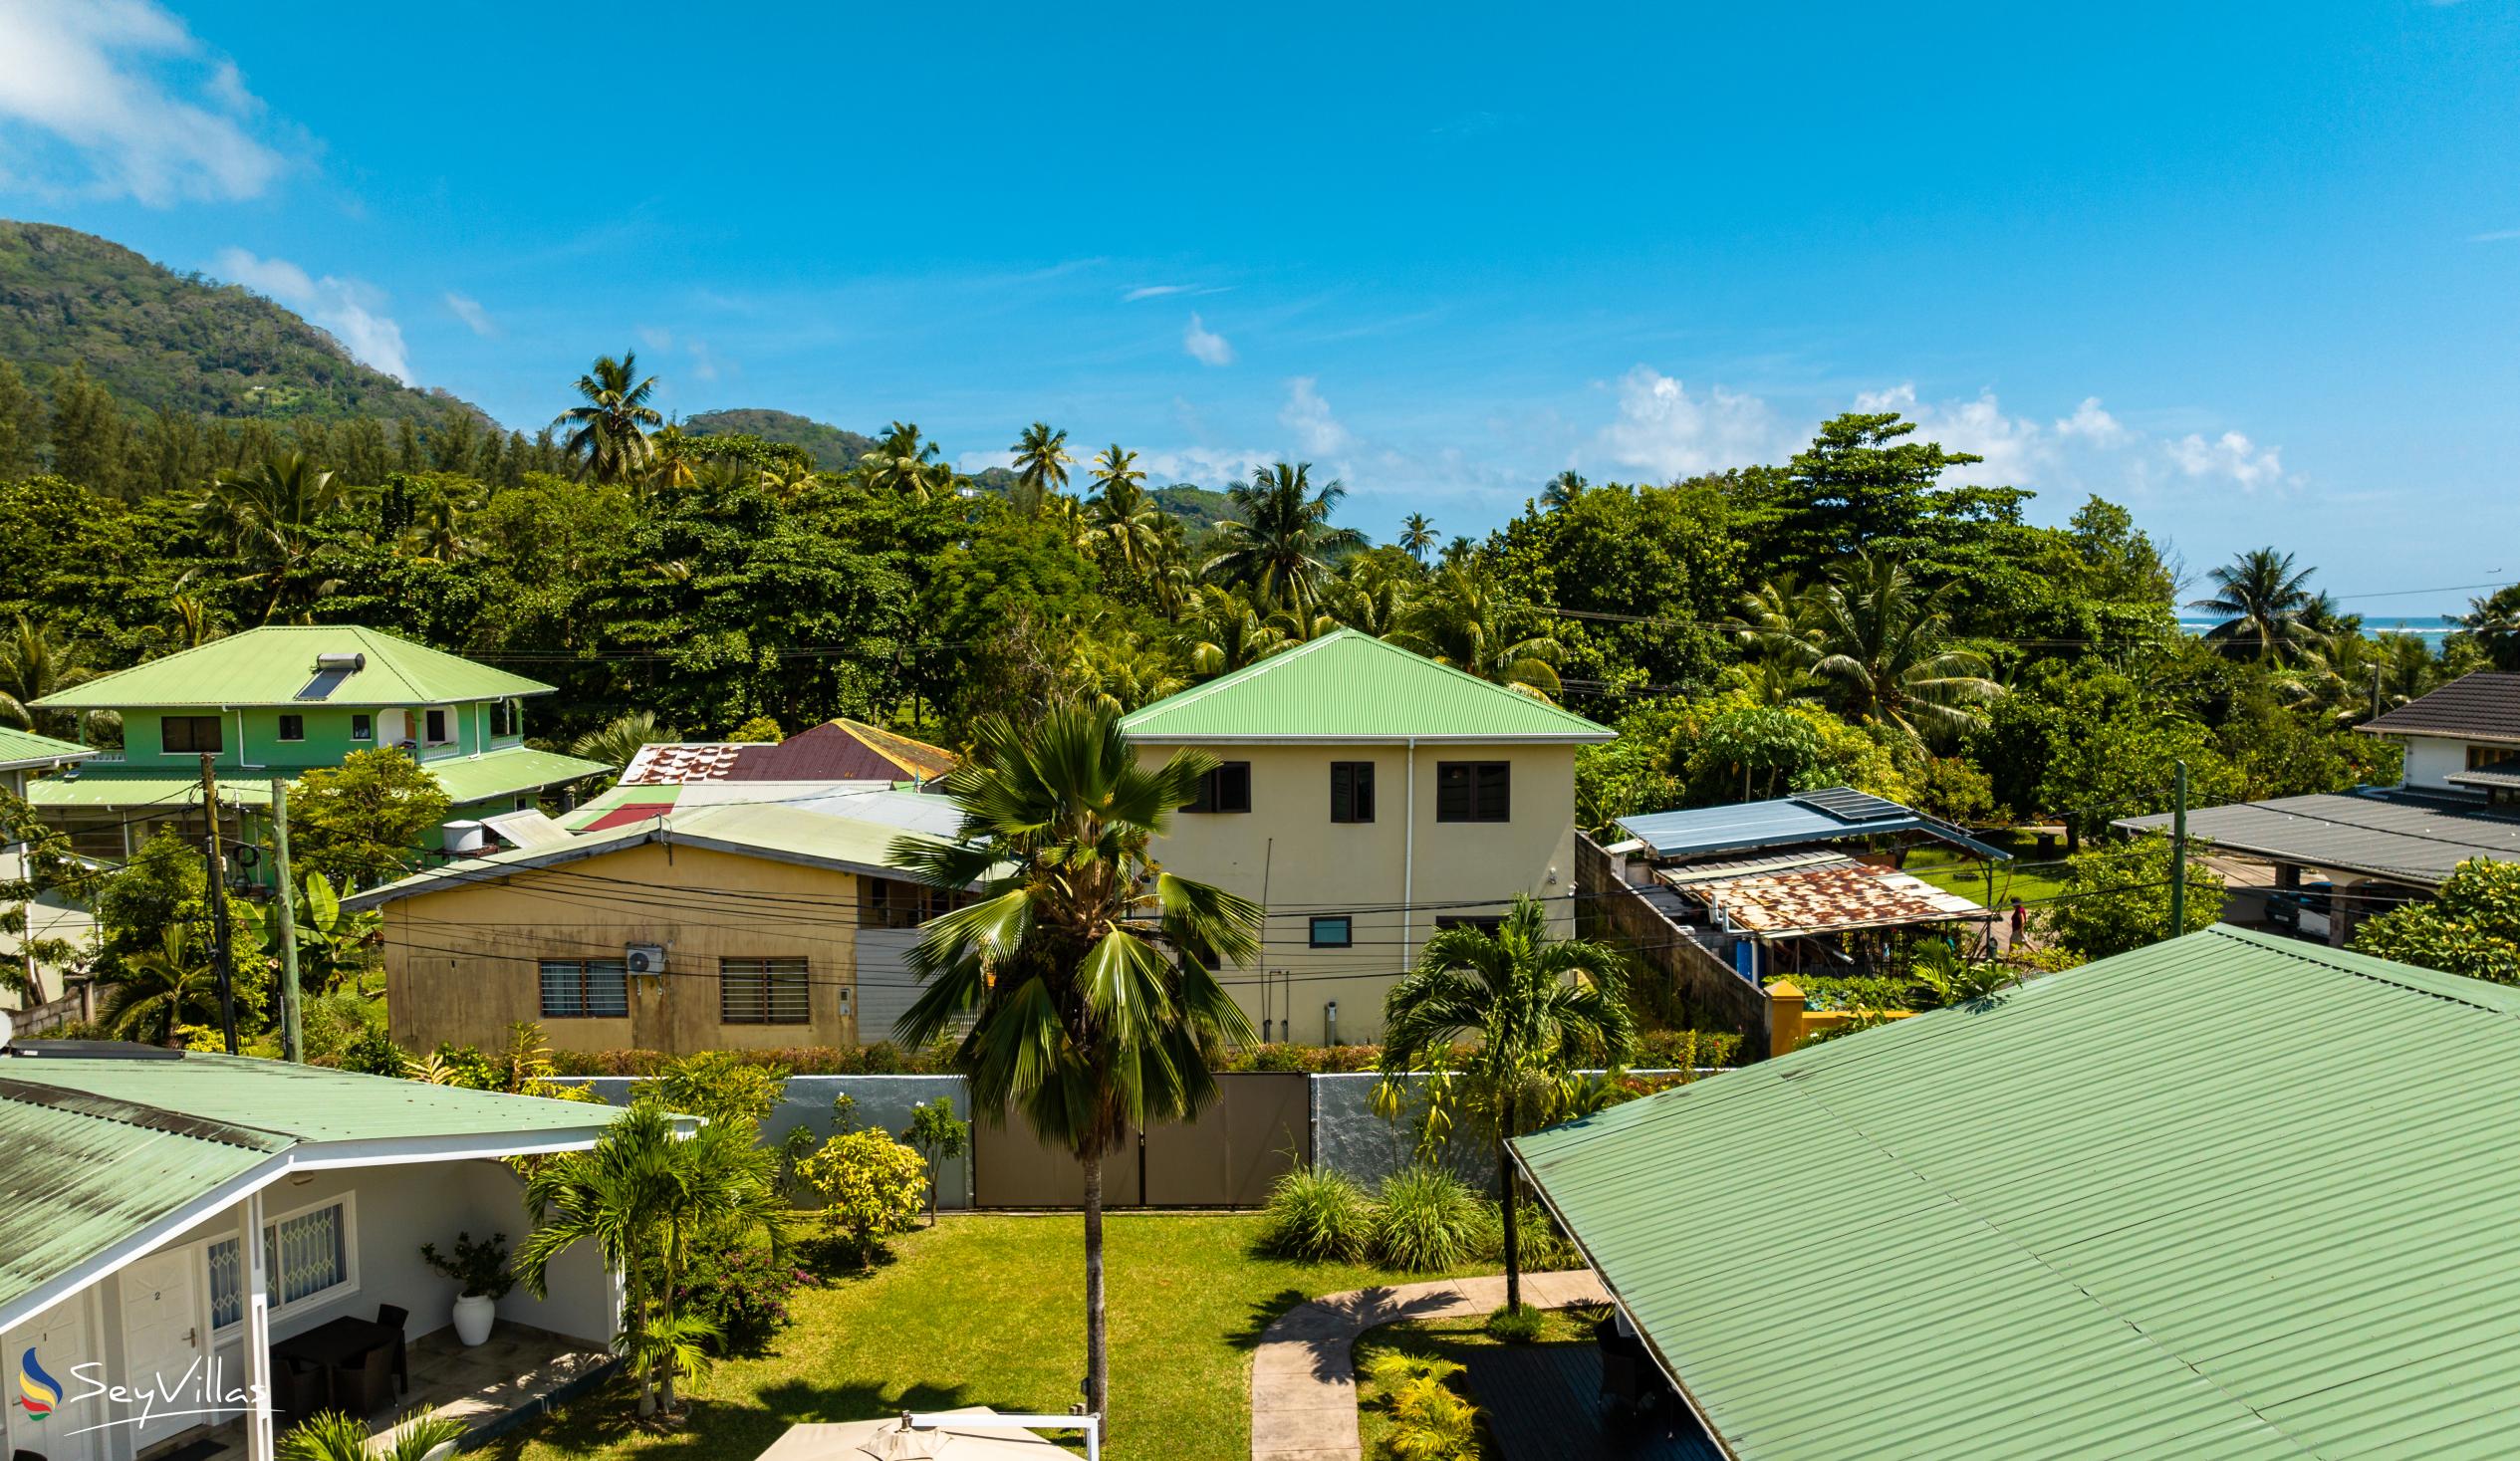 Photo 91: Hotel La Roussette - Location - Mahé (Seychelles)